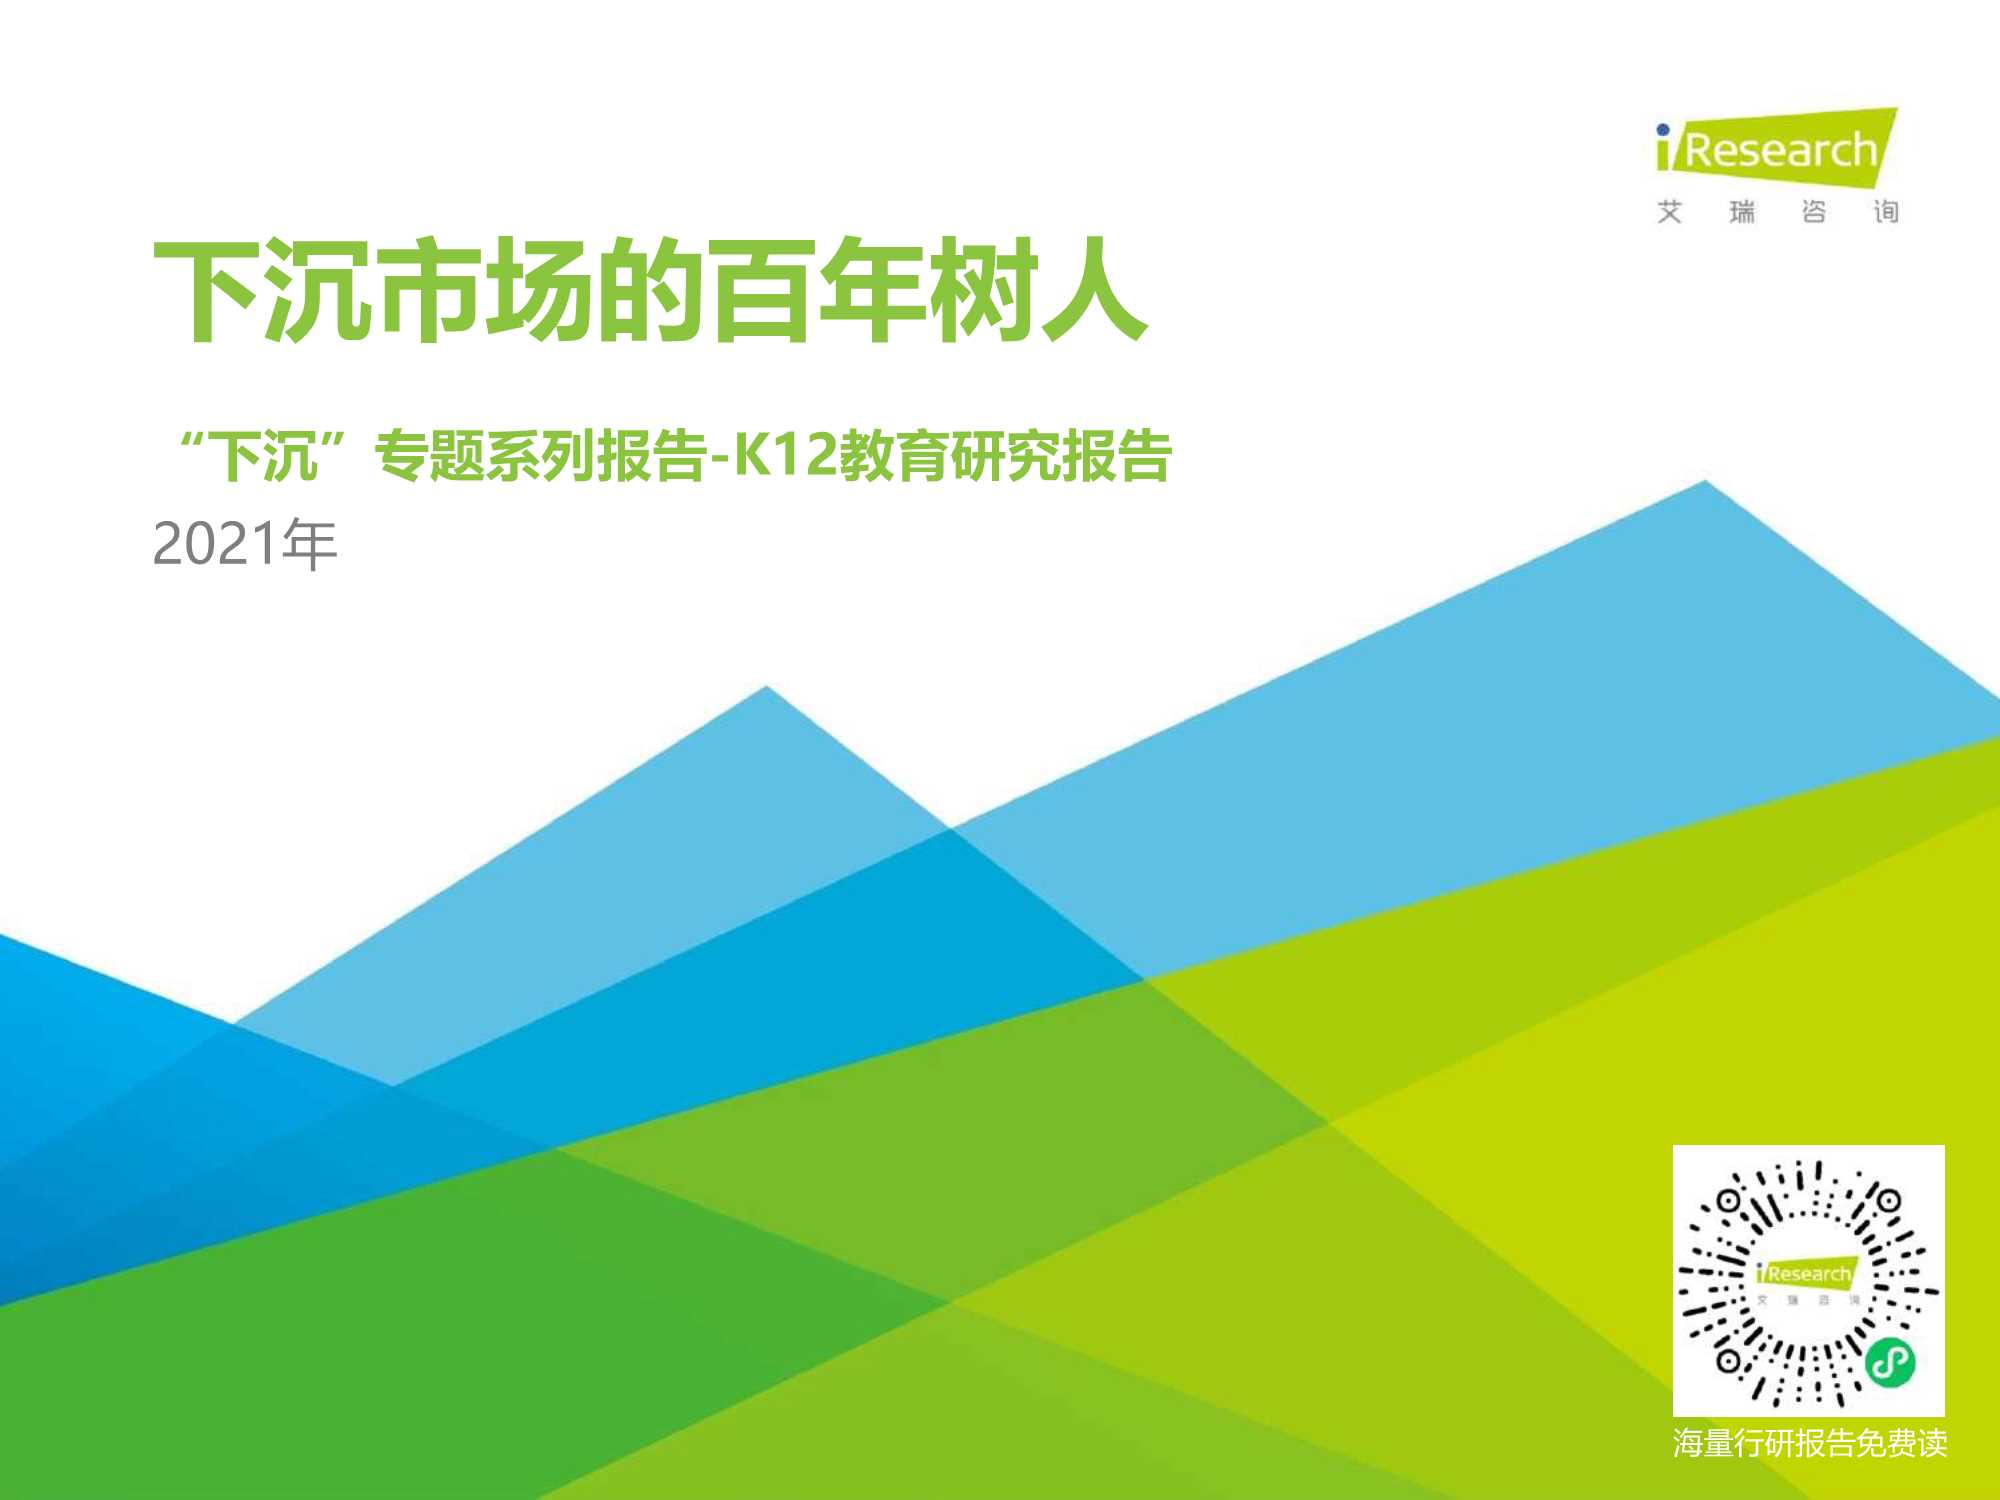 艾瑞咨询-2021年中国下沉市场-K12教育行业用户研究报告-2021.05-26页